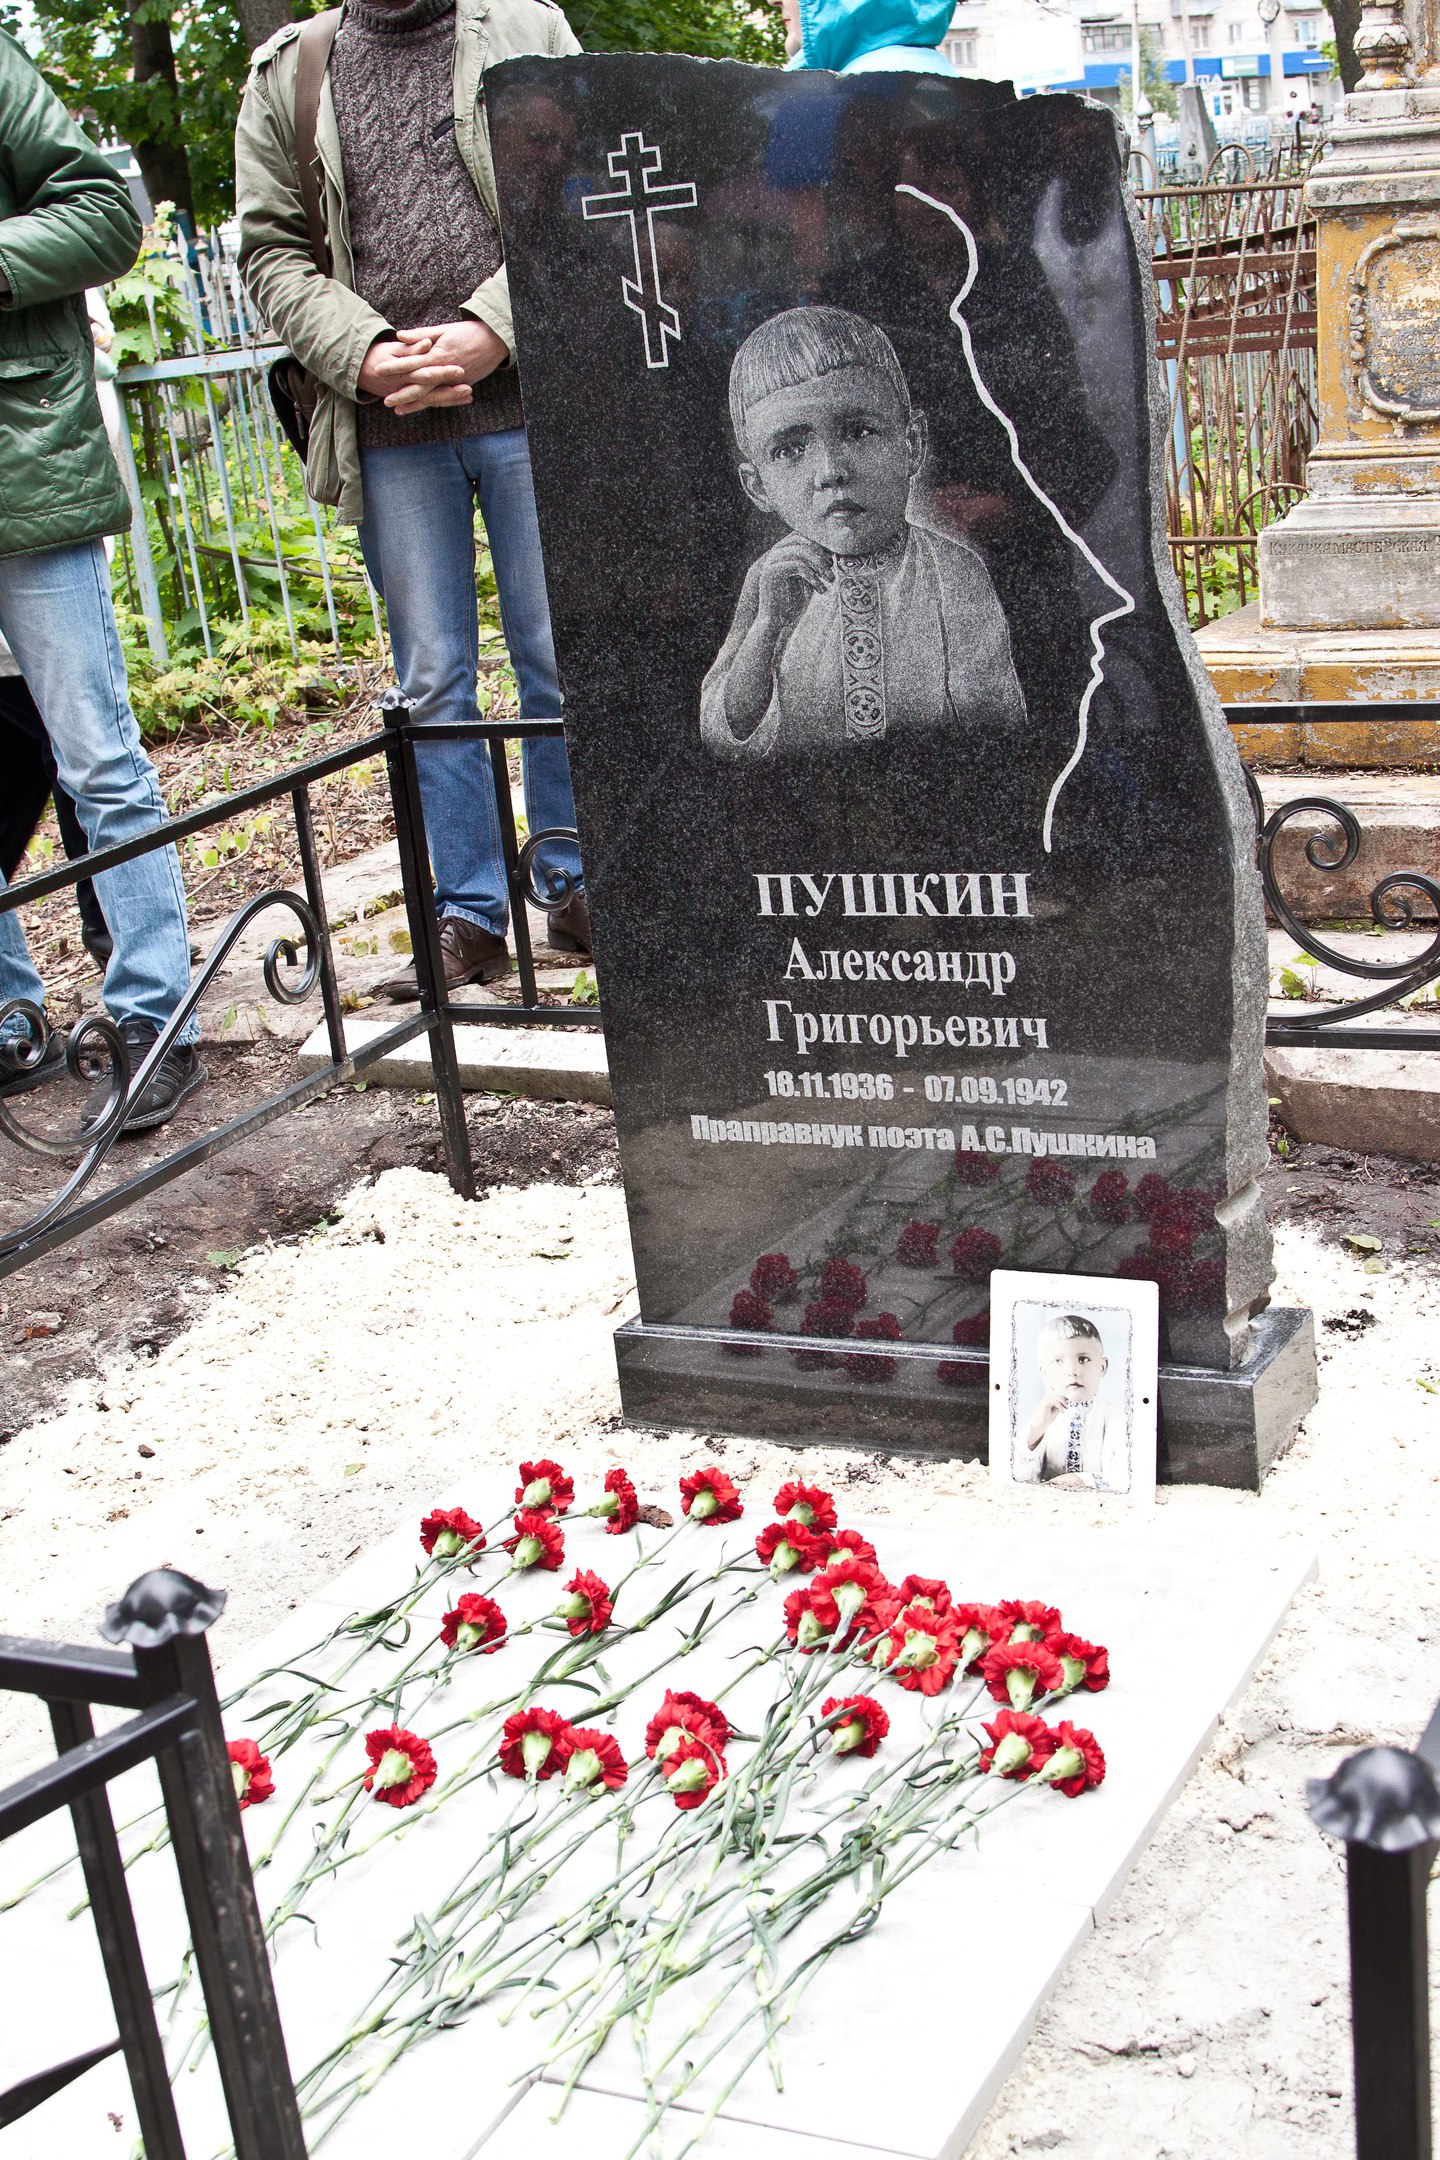 Кладбище Пушкина Александра Сергеевича